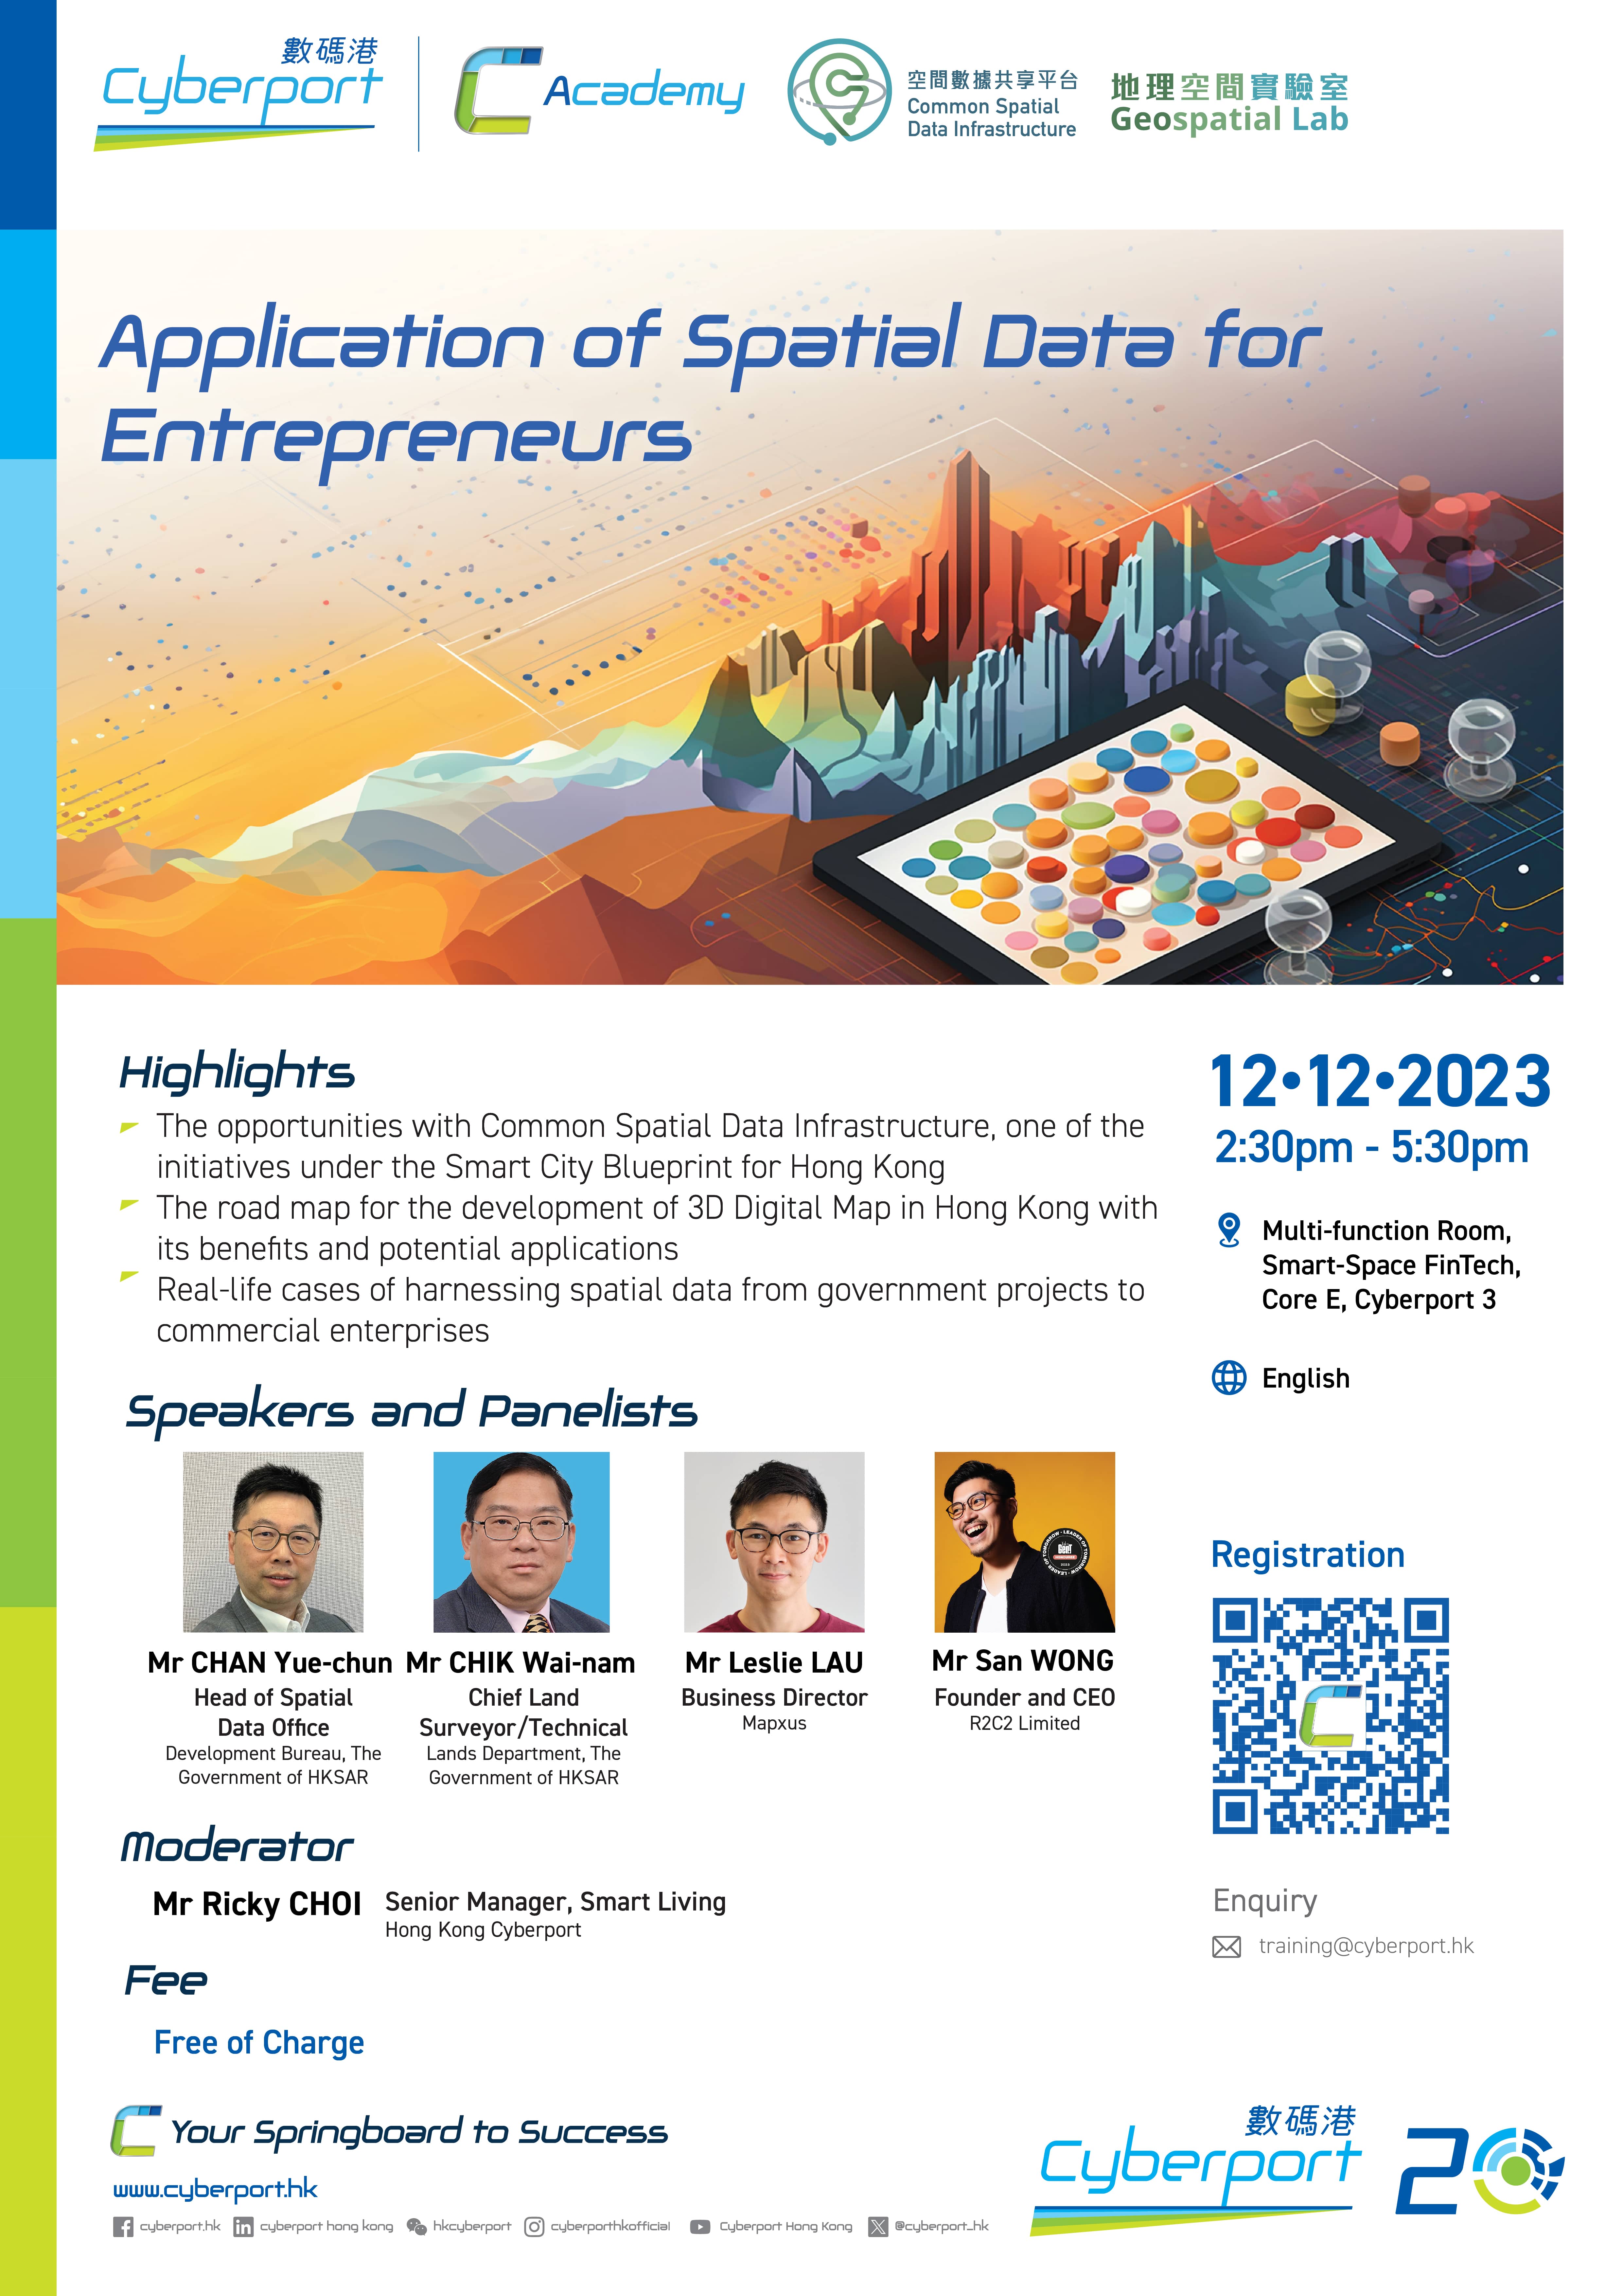 「Application of Spatial Data for Entrepreneurs」 海報